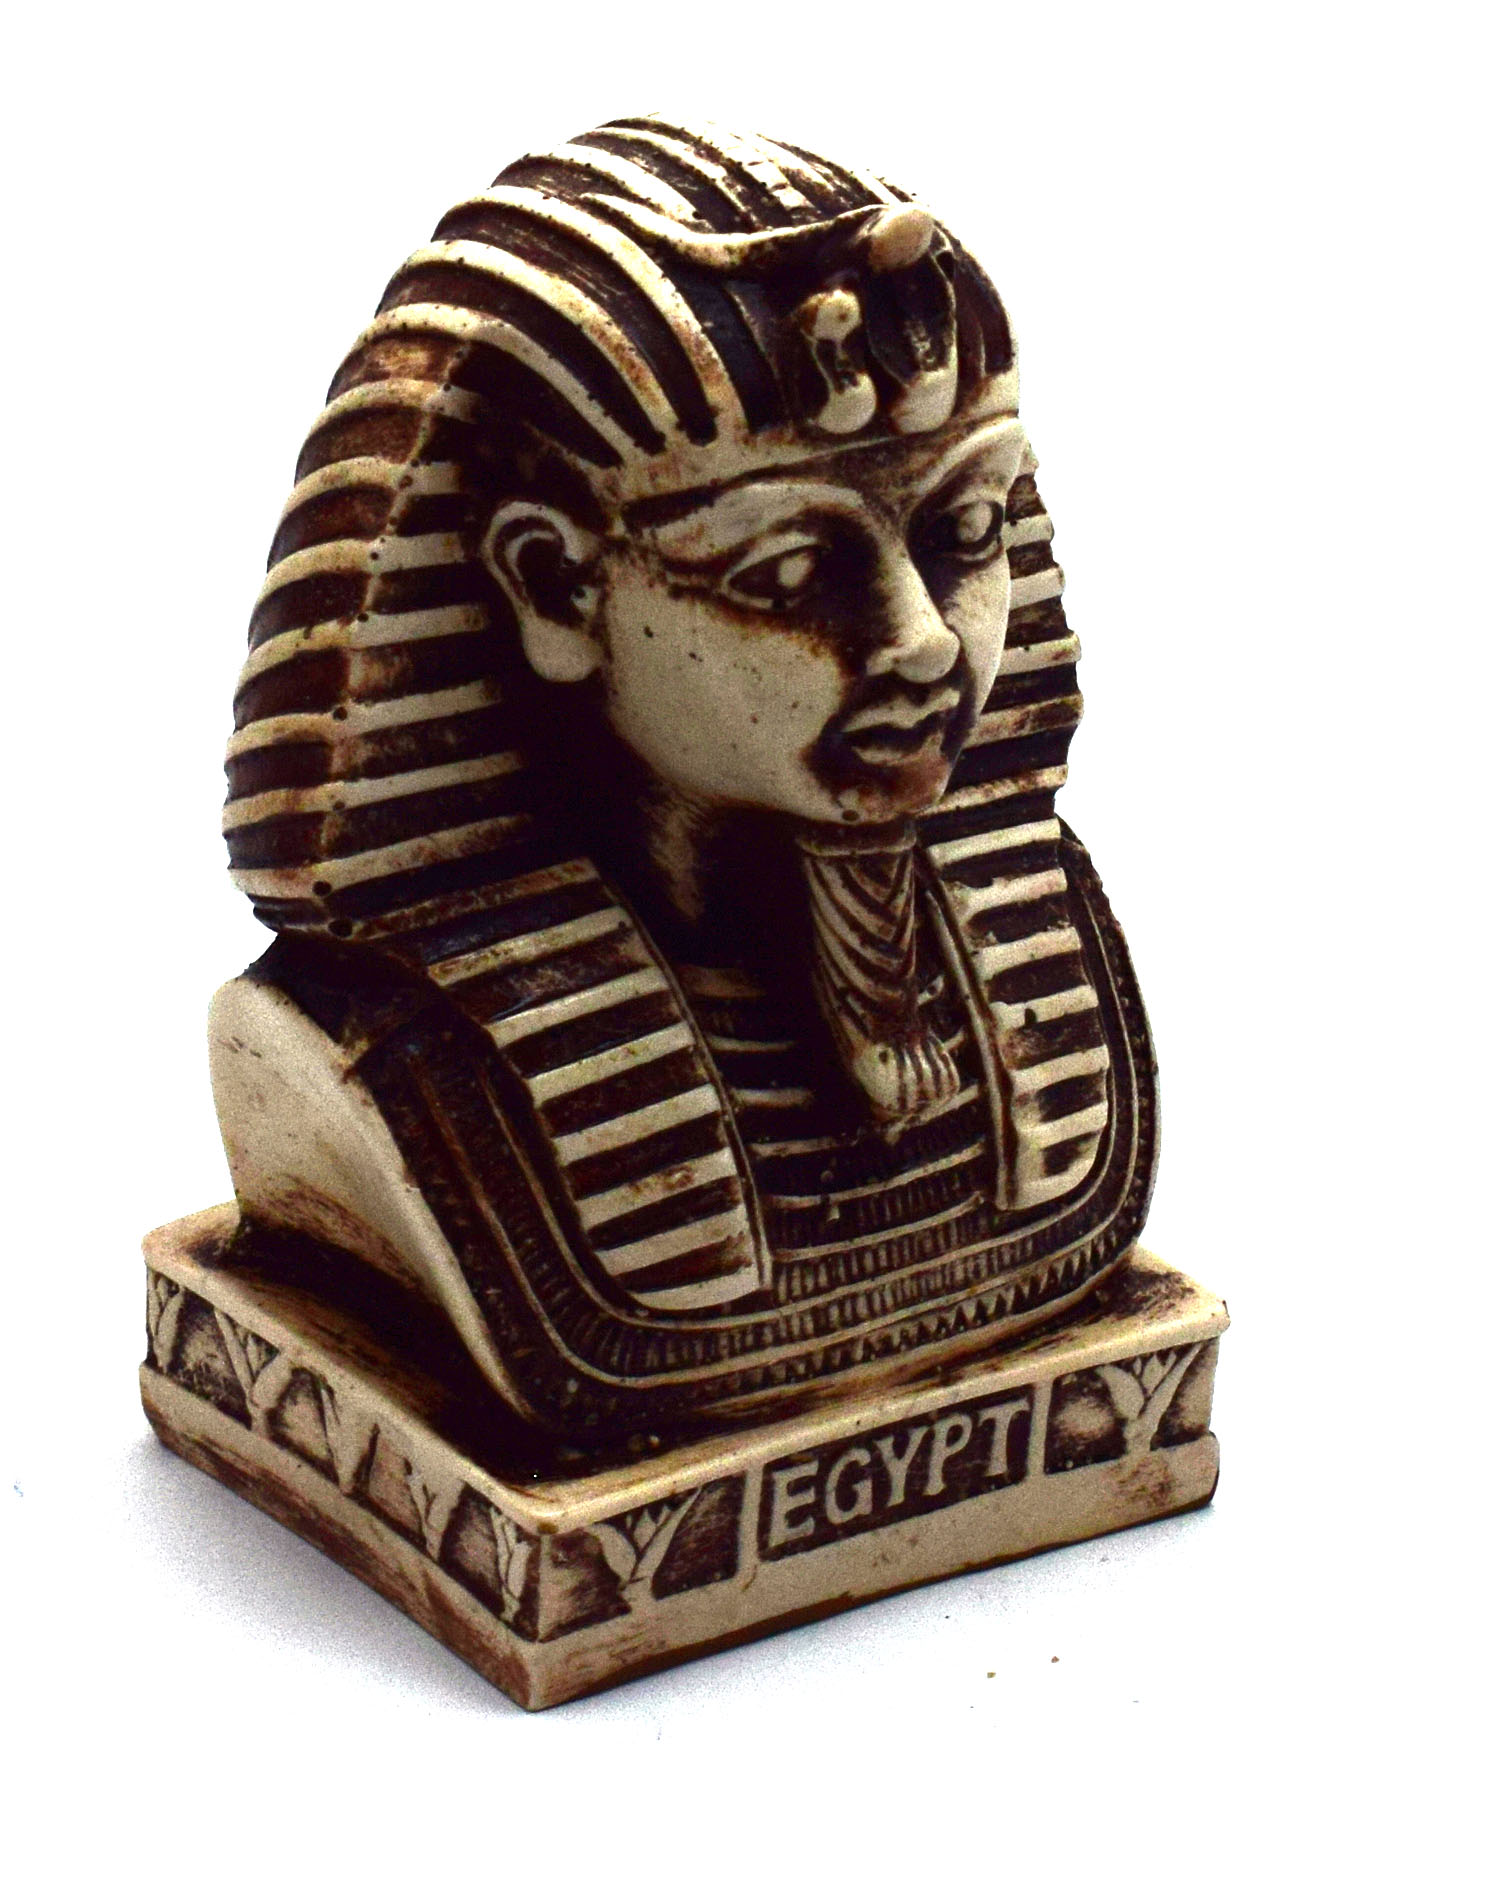 تمثال الملك المصري  توت عنخ آمون هدايا تذكارية مصرية للنساء والفتيات والأم (أبيض - طول 8.5 سم)